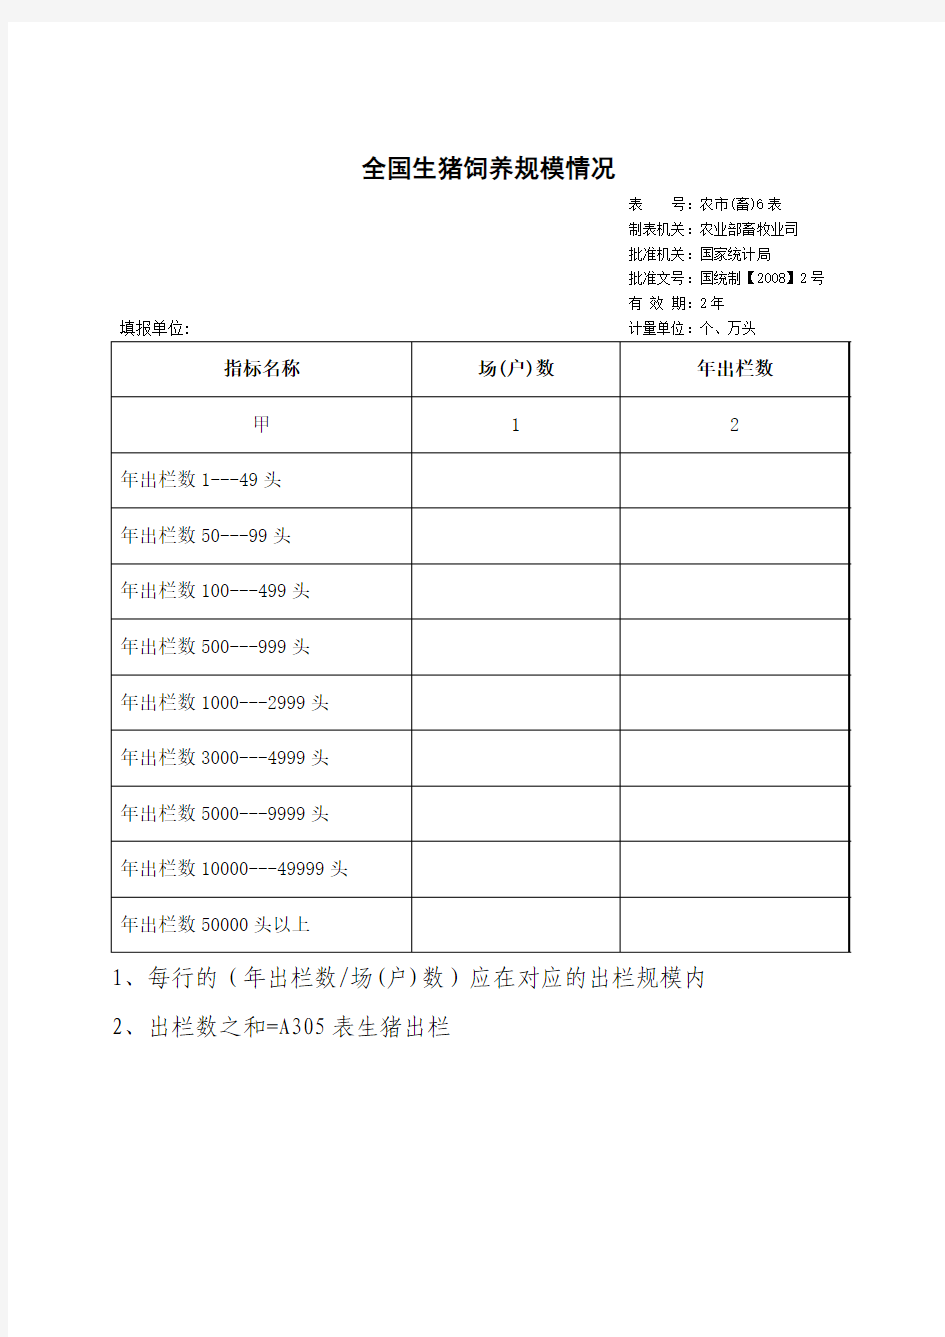 《中国畜牧业年鉴》中的表